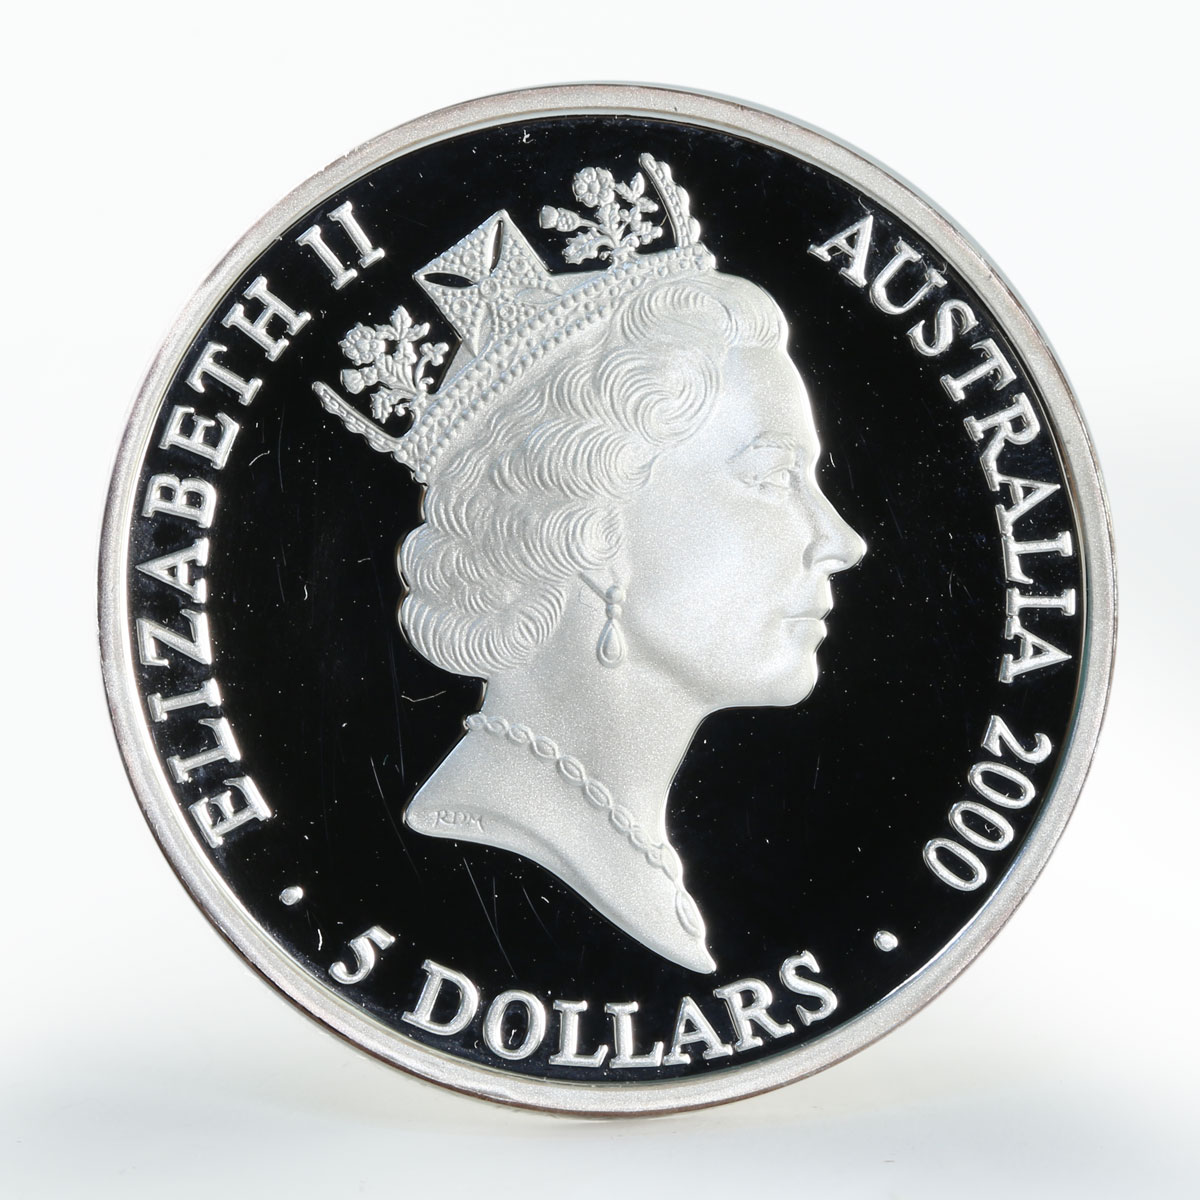 Australia 5 dollars Sydney Olympic Sharks silver coin 2000